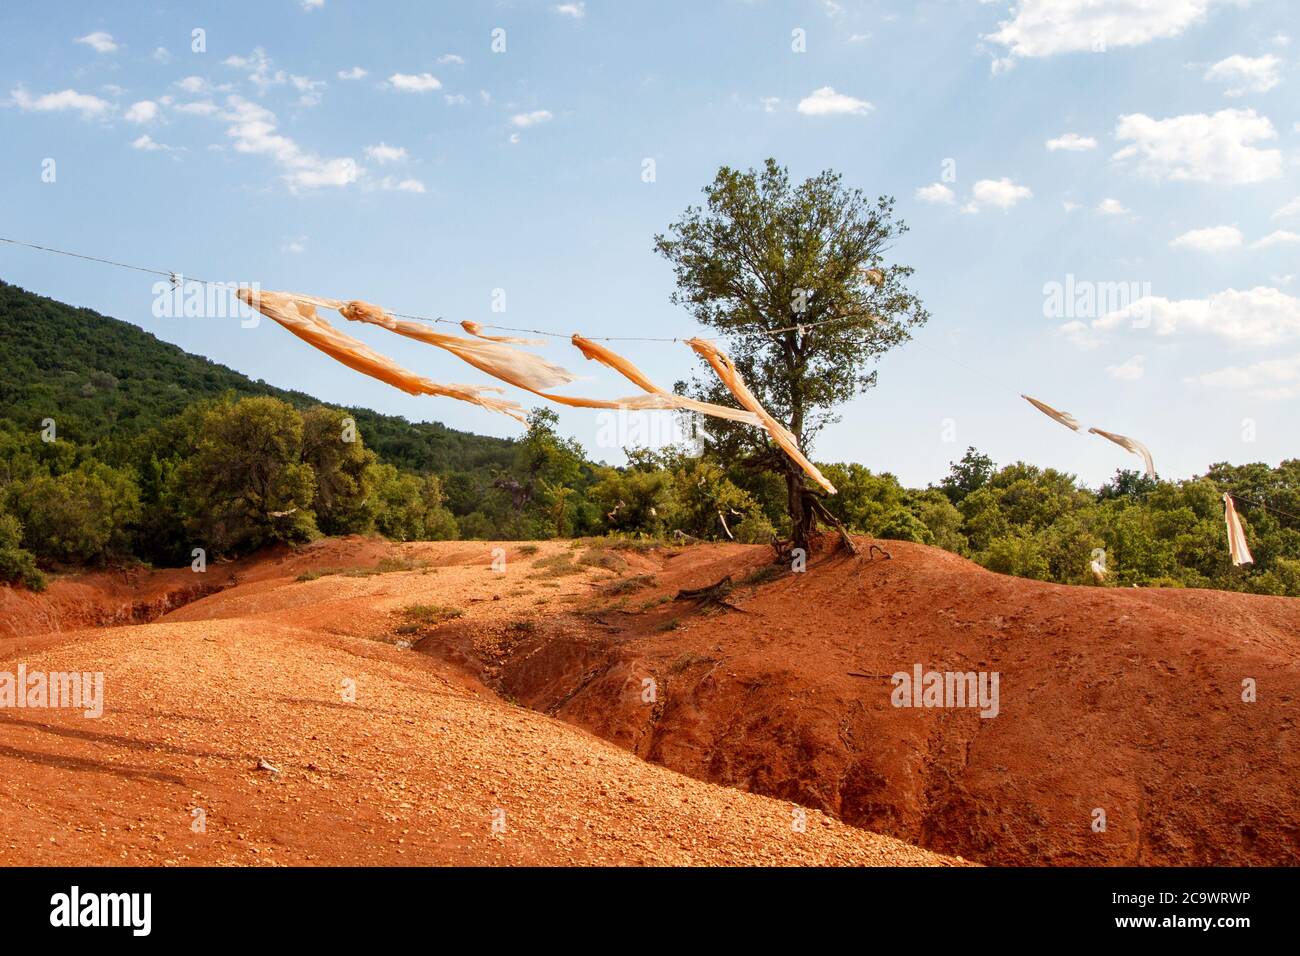 Terra di argilla rossa, un fenomeno geologico raro, visto vicino alla città di Preveza, nella regione dell'Epiro, Grecia, Europa. Foto Stock